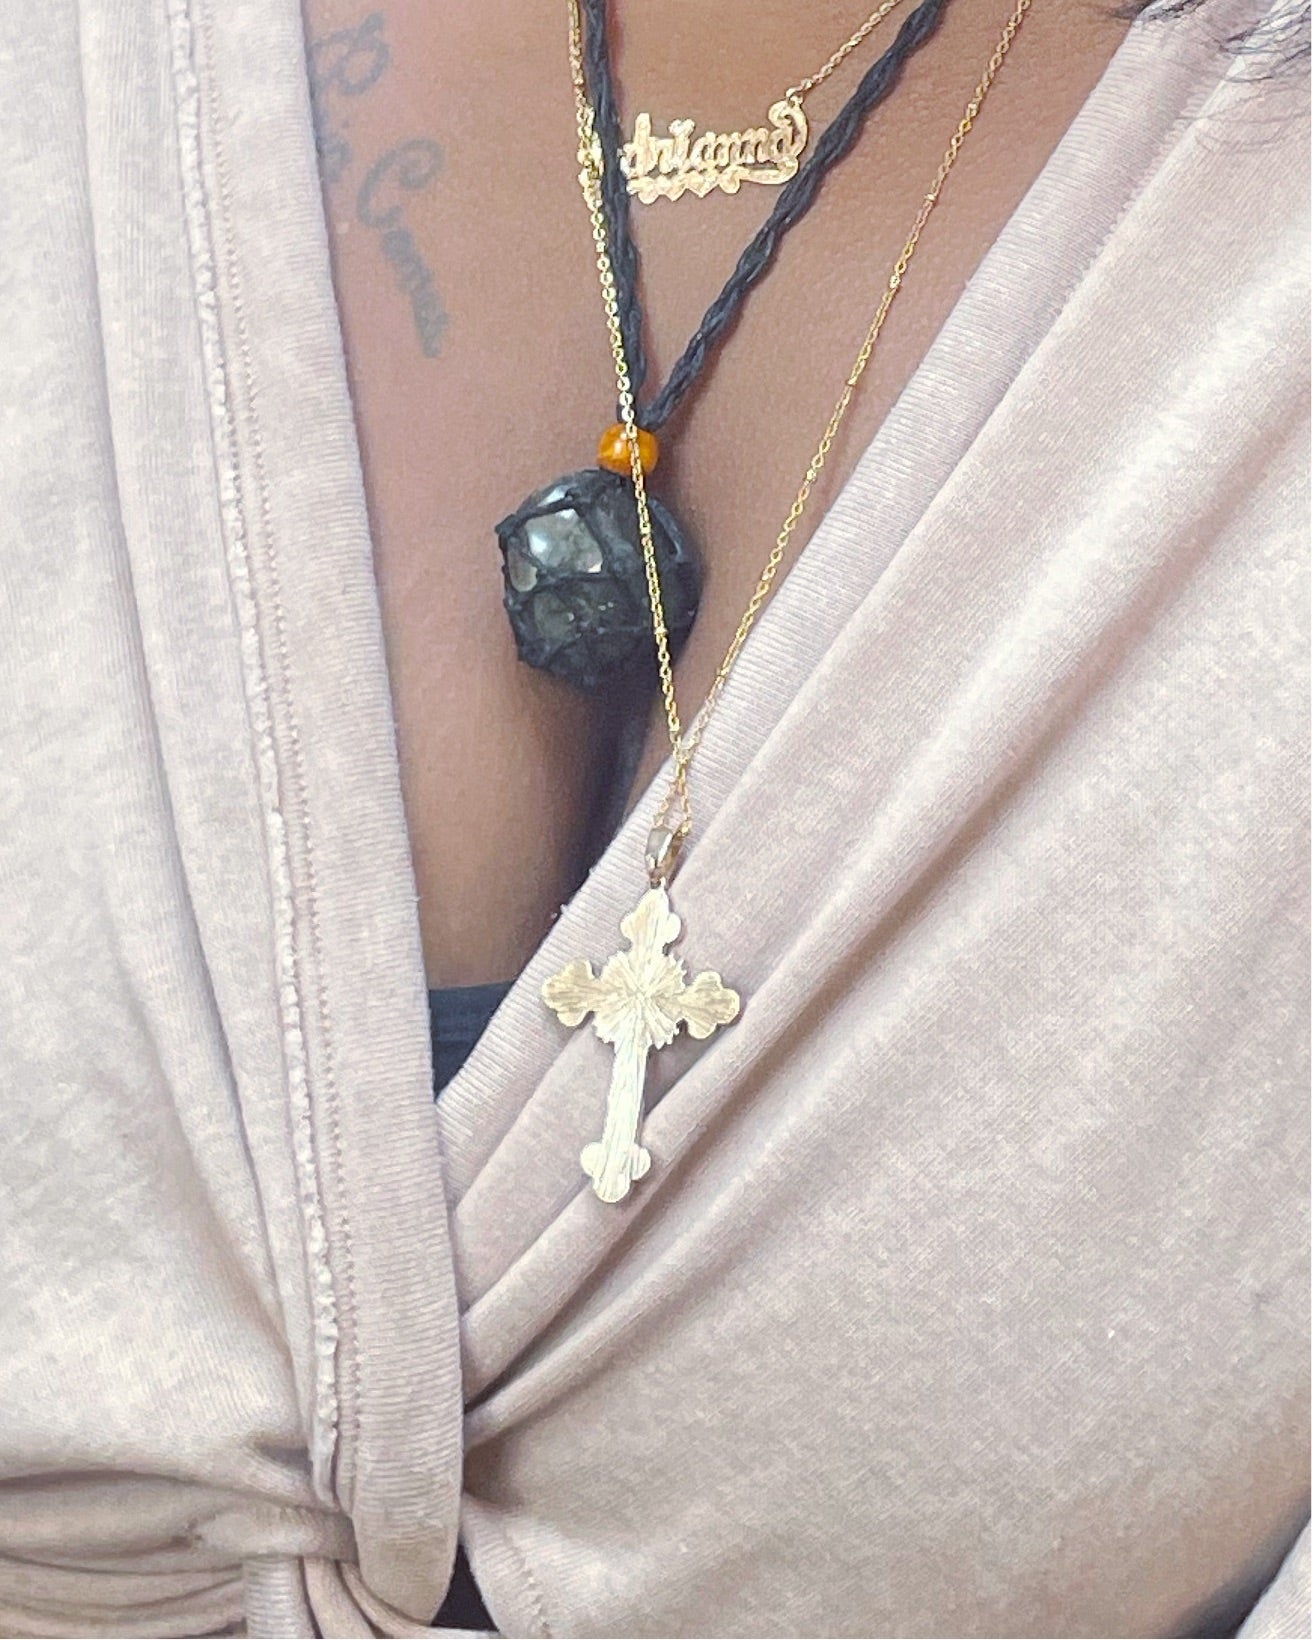 Black Crystal Necklace Holder